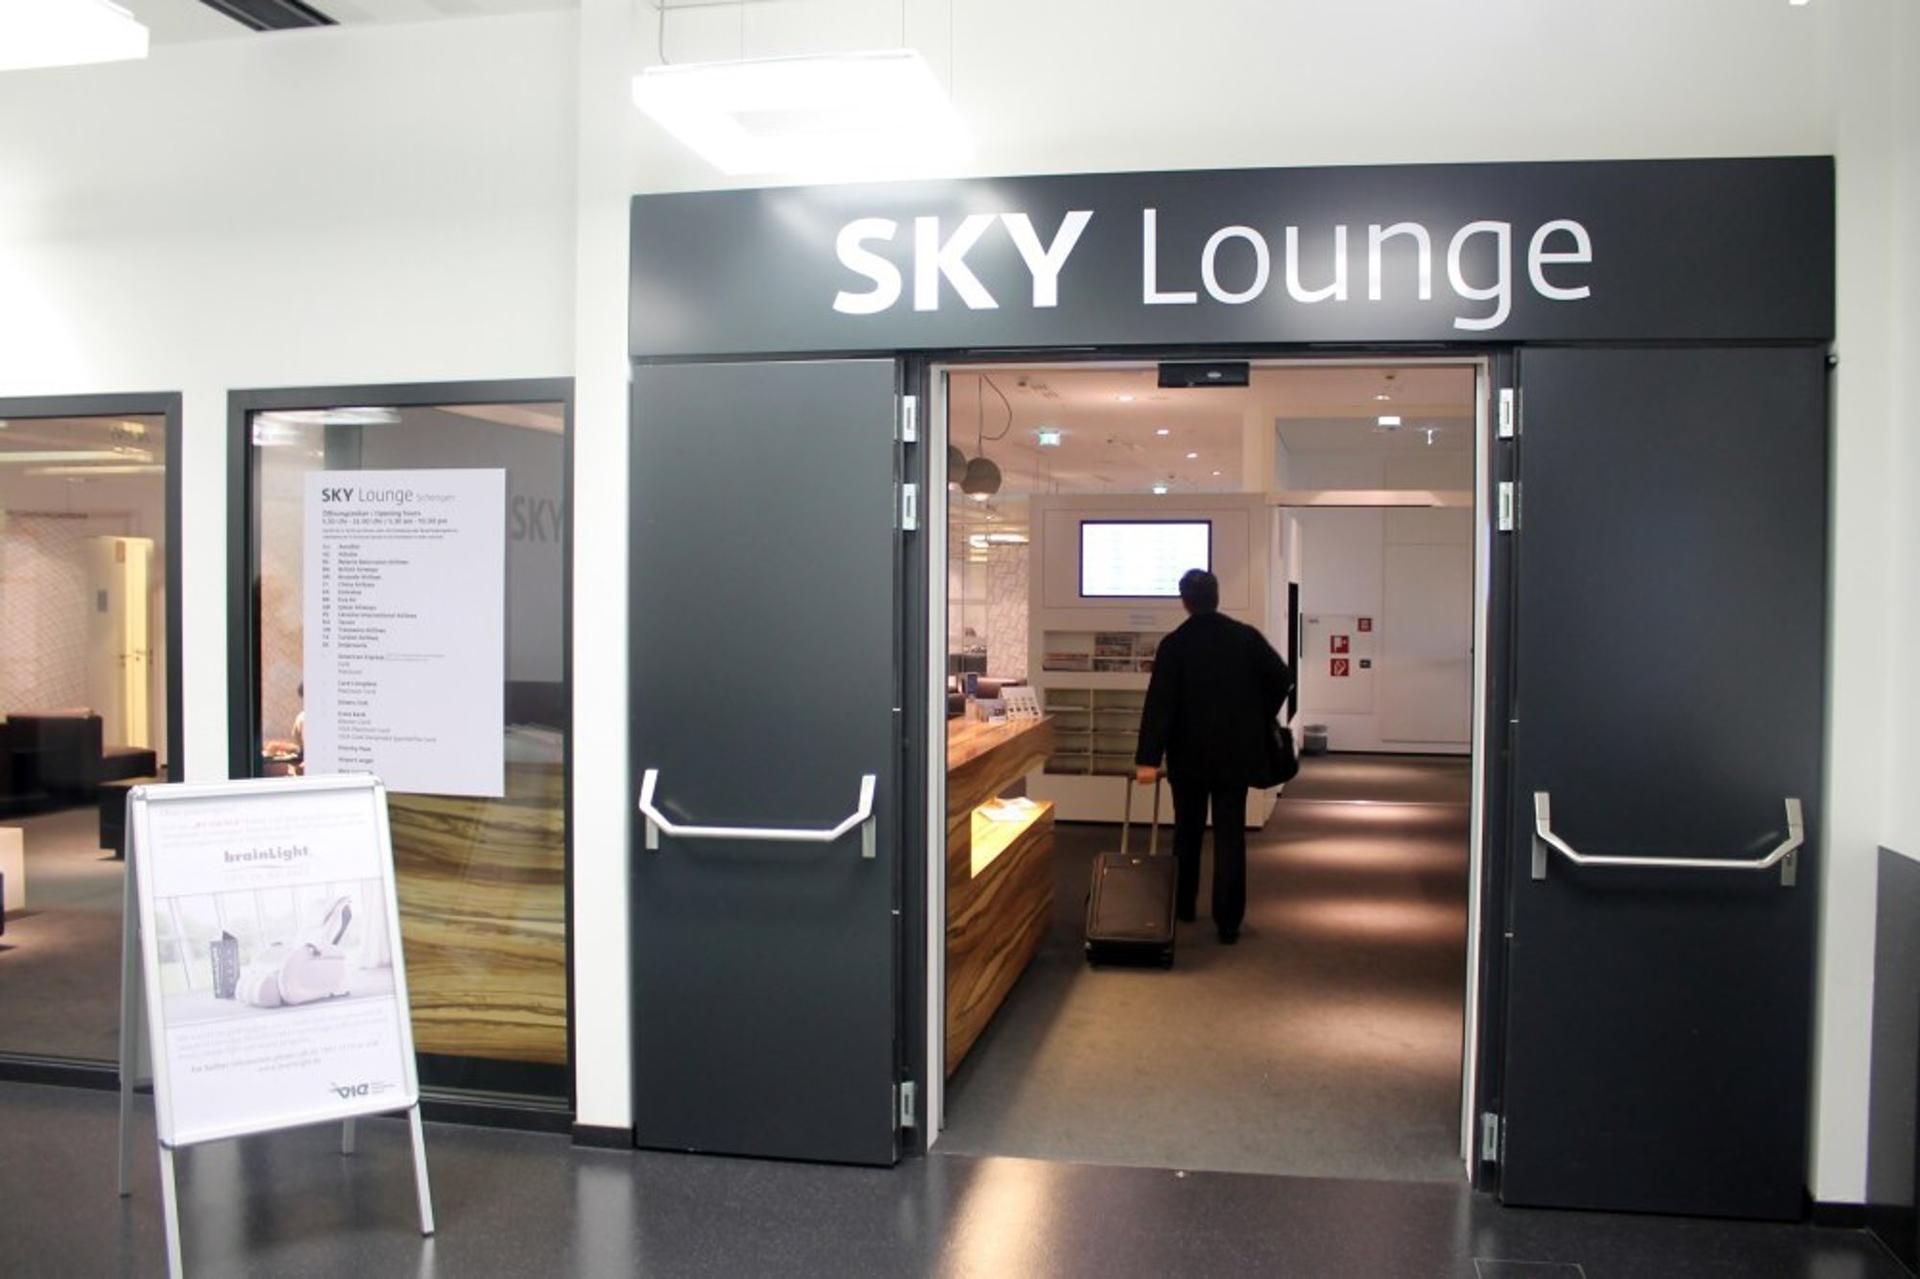 Sky Lounge (Schengen) image 14 of 43